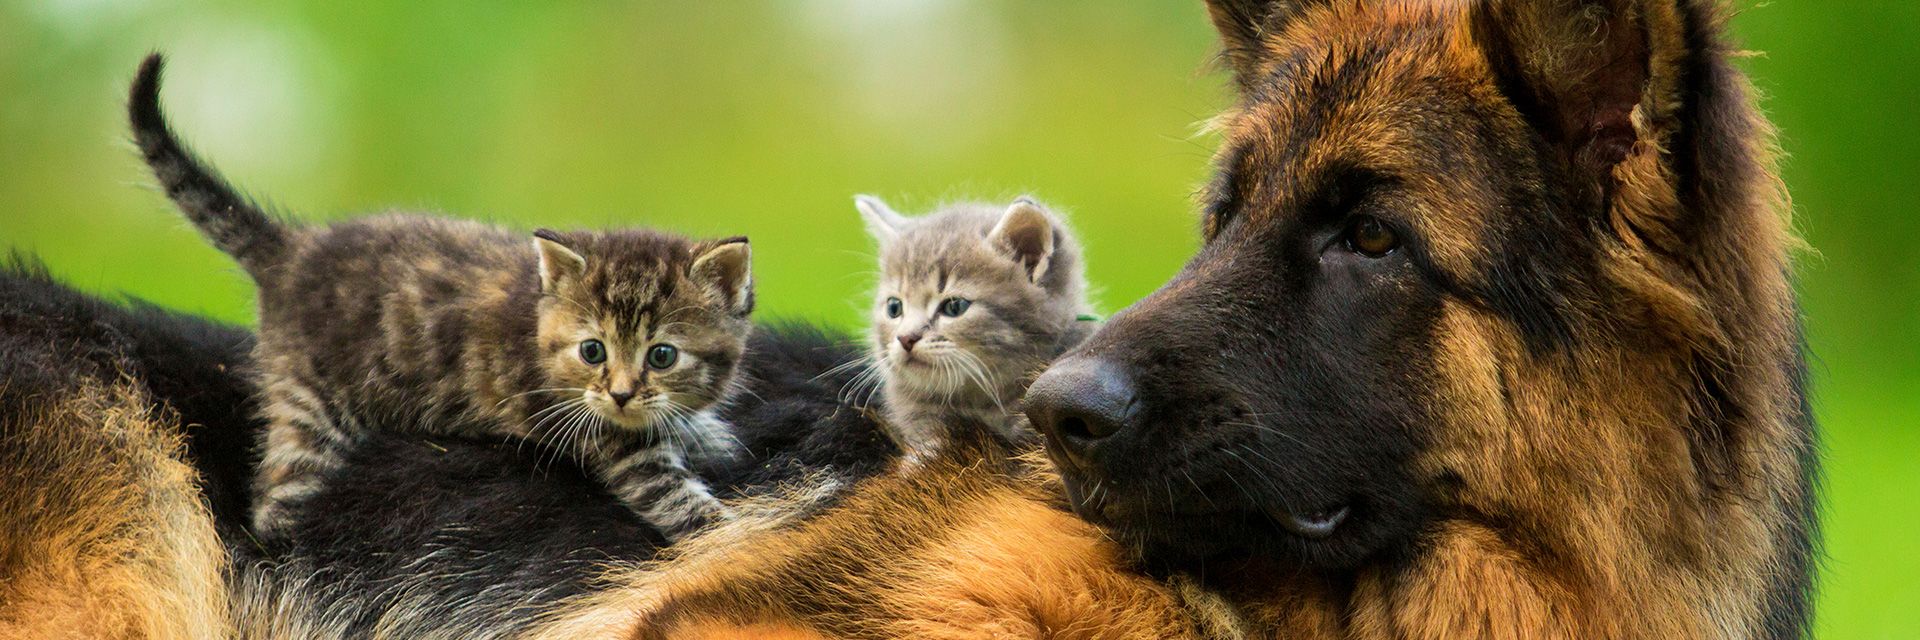 Twee kittens op de rug van Duitse herder